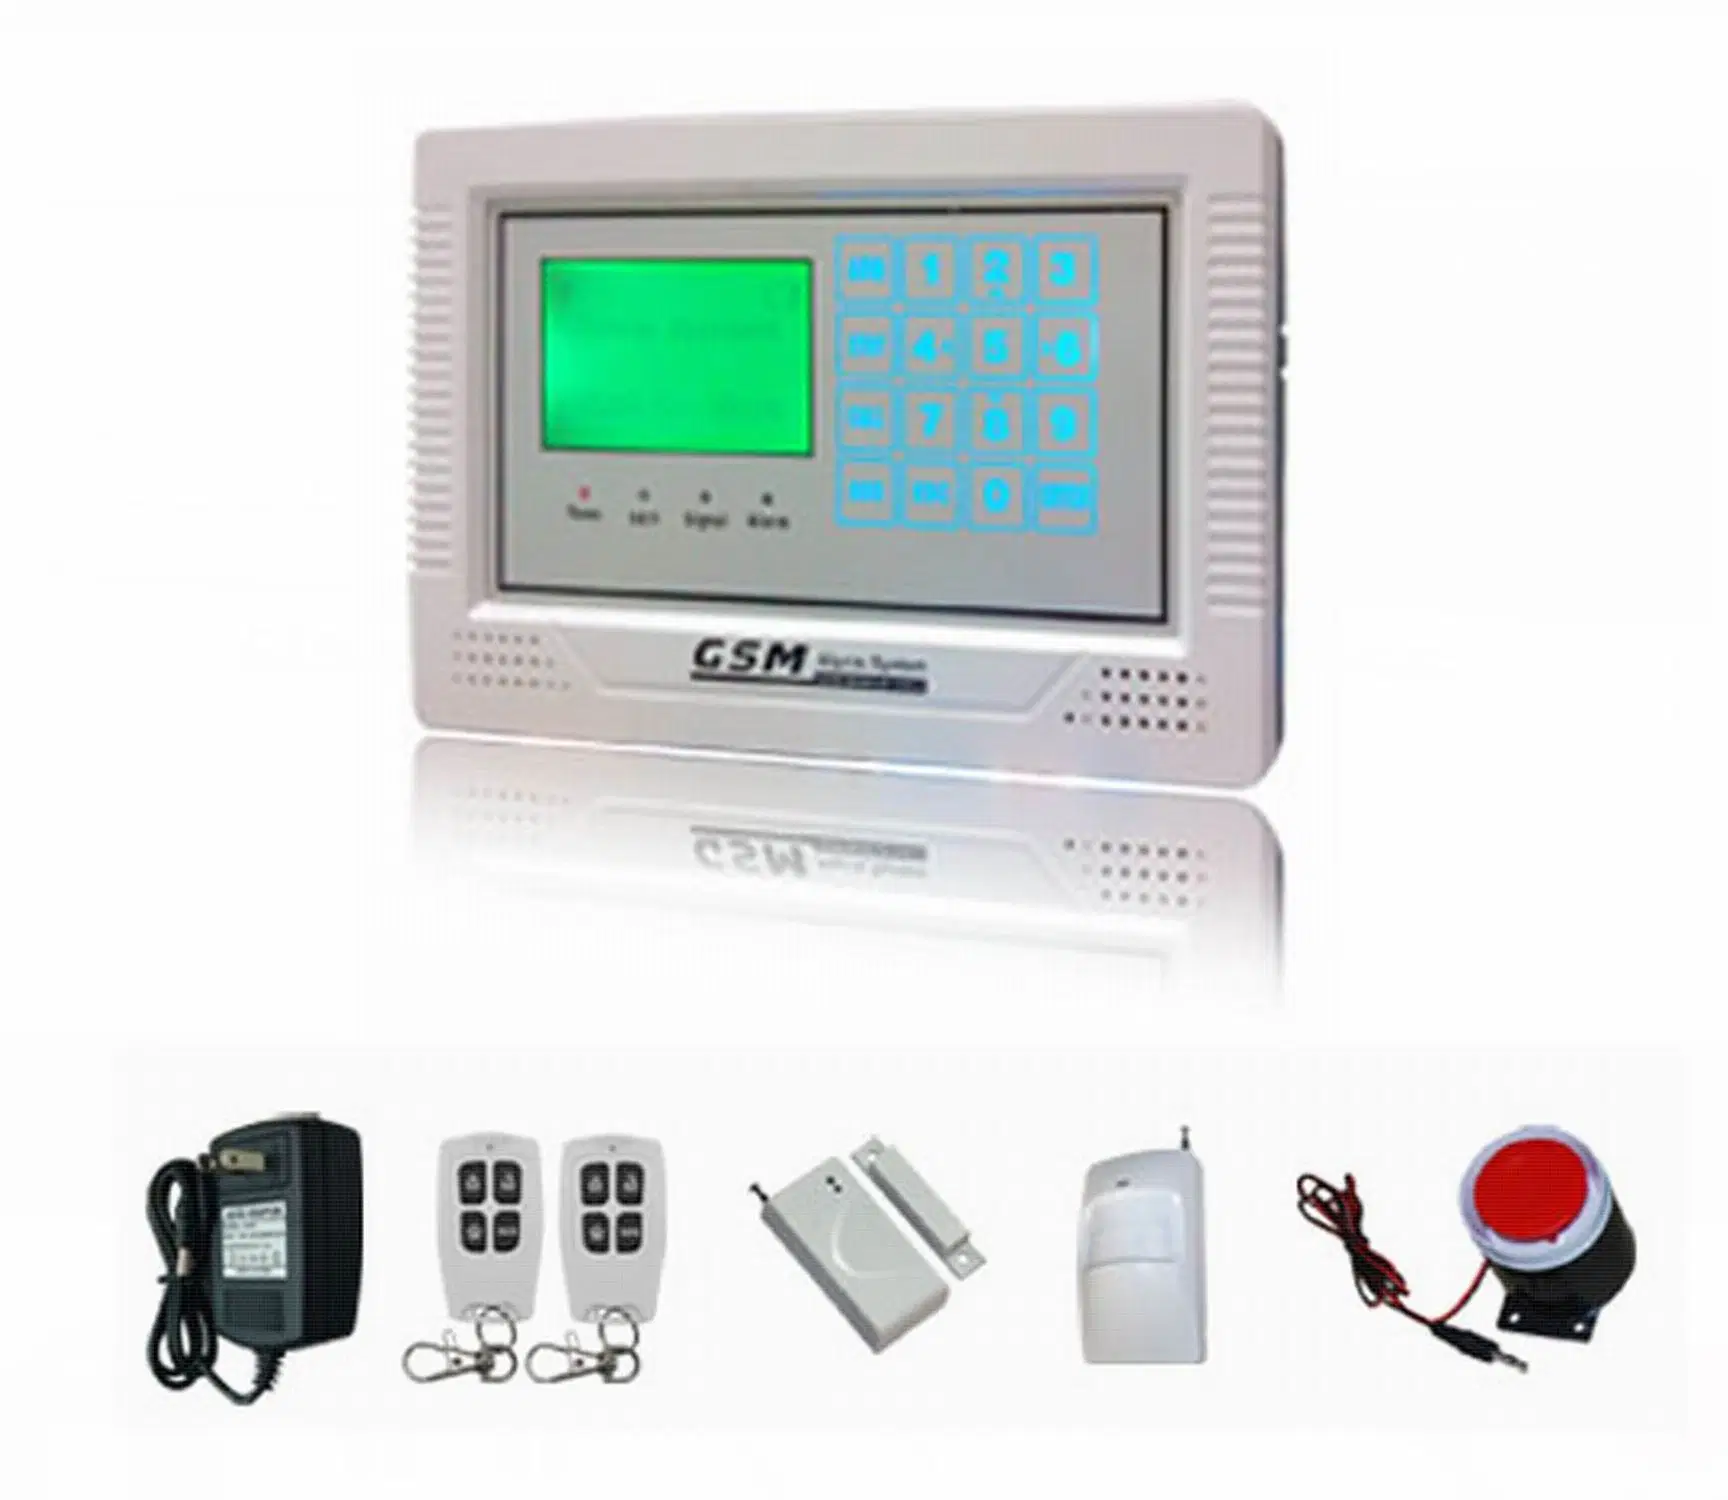 Домашние системы безопасности GSM Burglarproof системы охранной сигнализации с ЖК-дисплеем